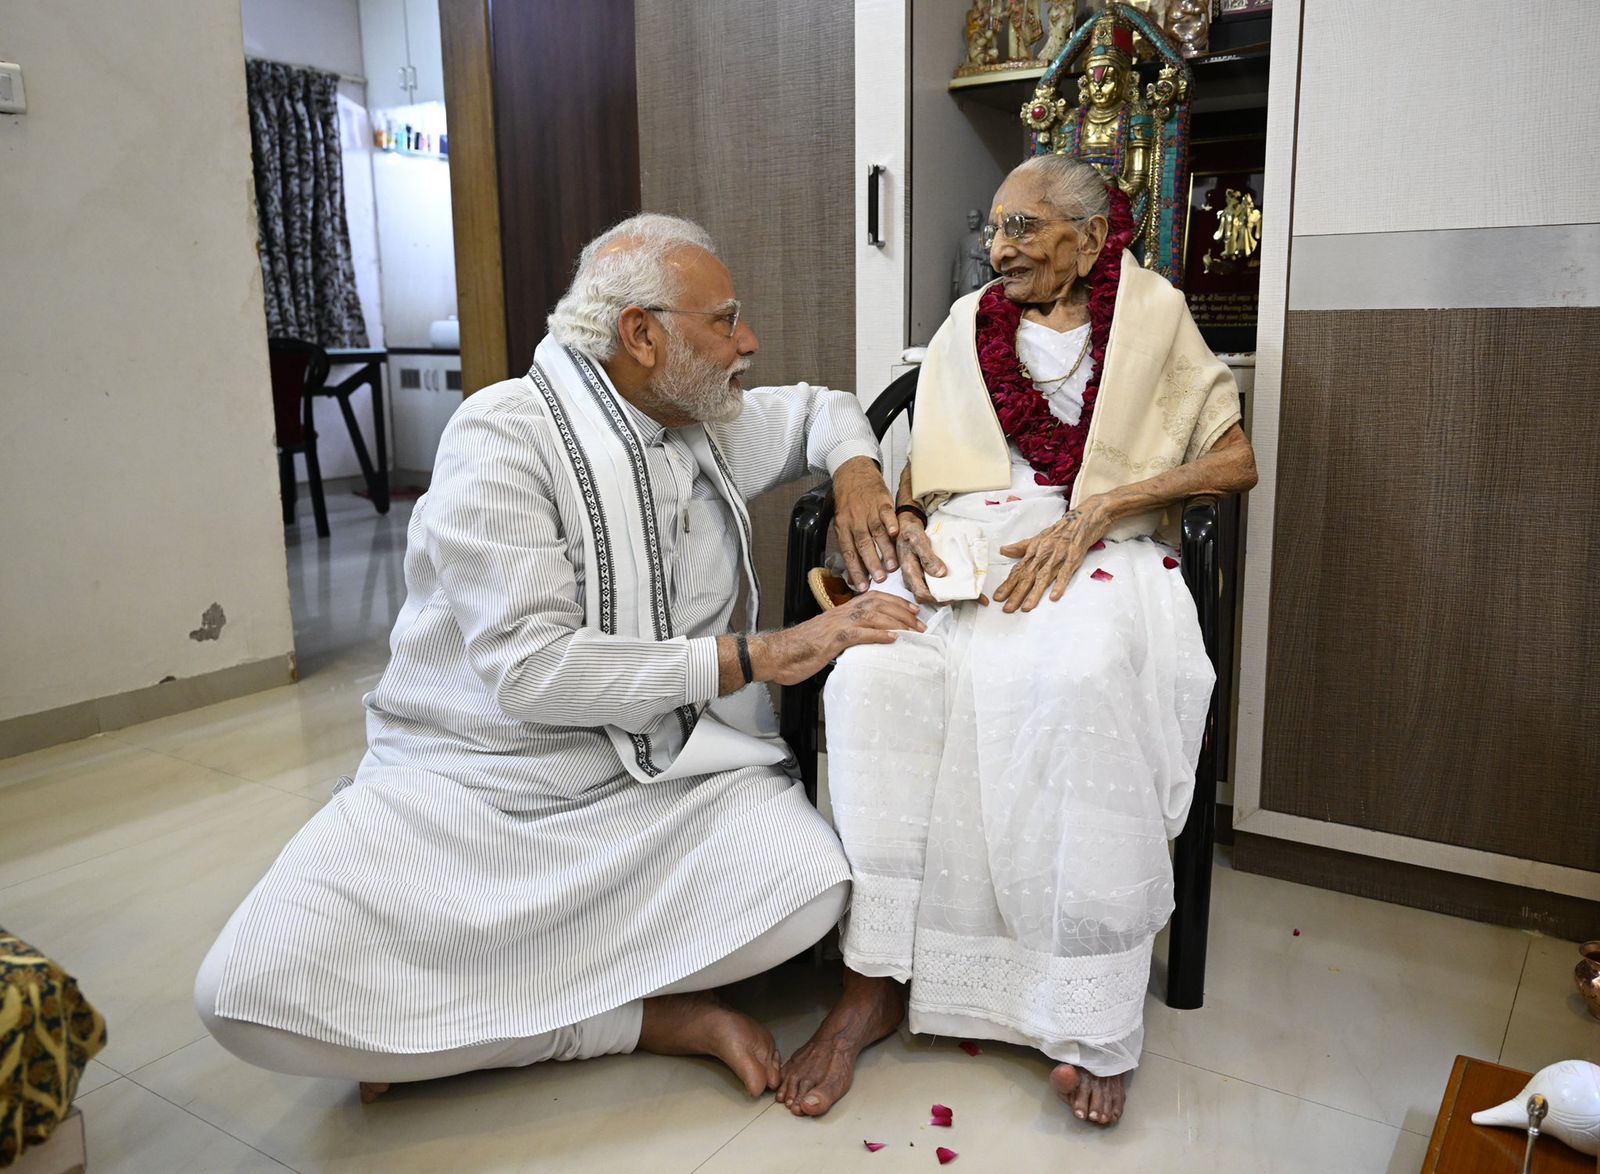 PM नरेंद्र मोदी की माता जी हीराबेन मोदी आज जीवन के 100वें वर्ष में प्रवेश किया